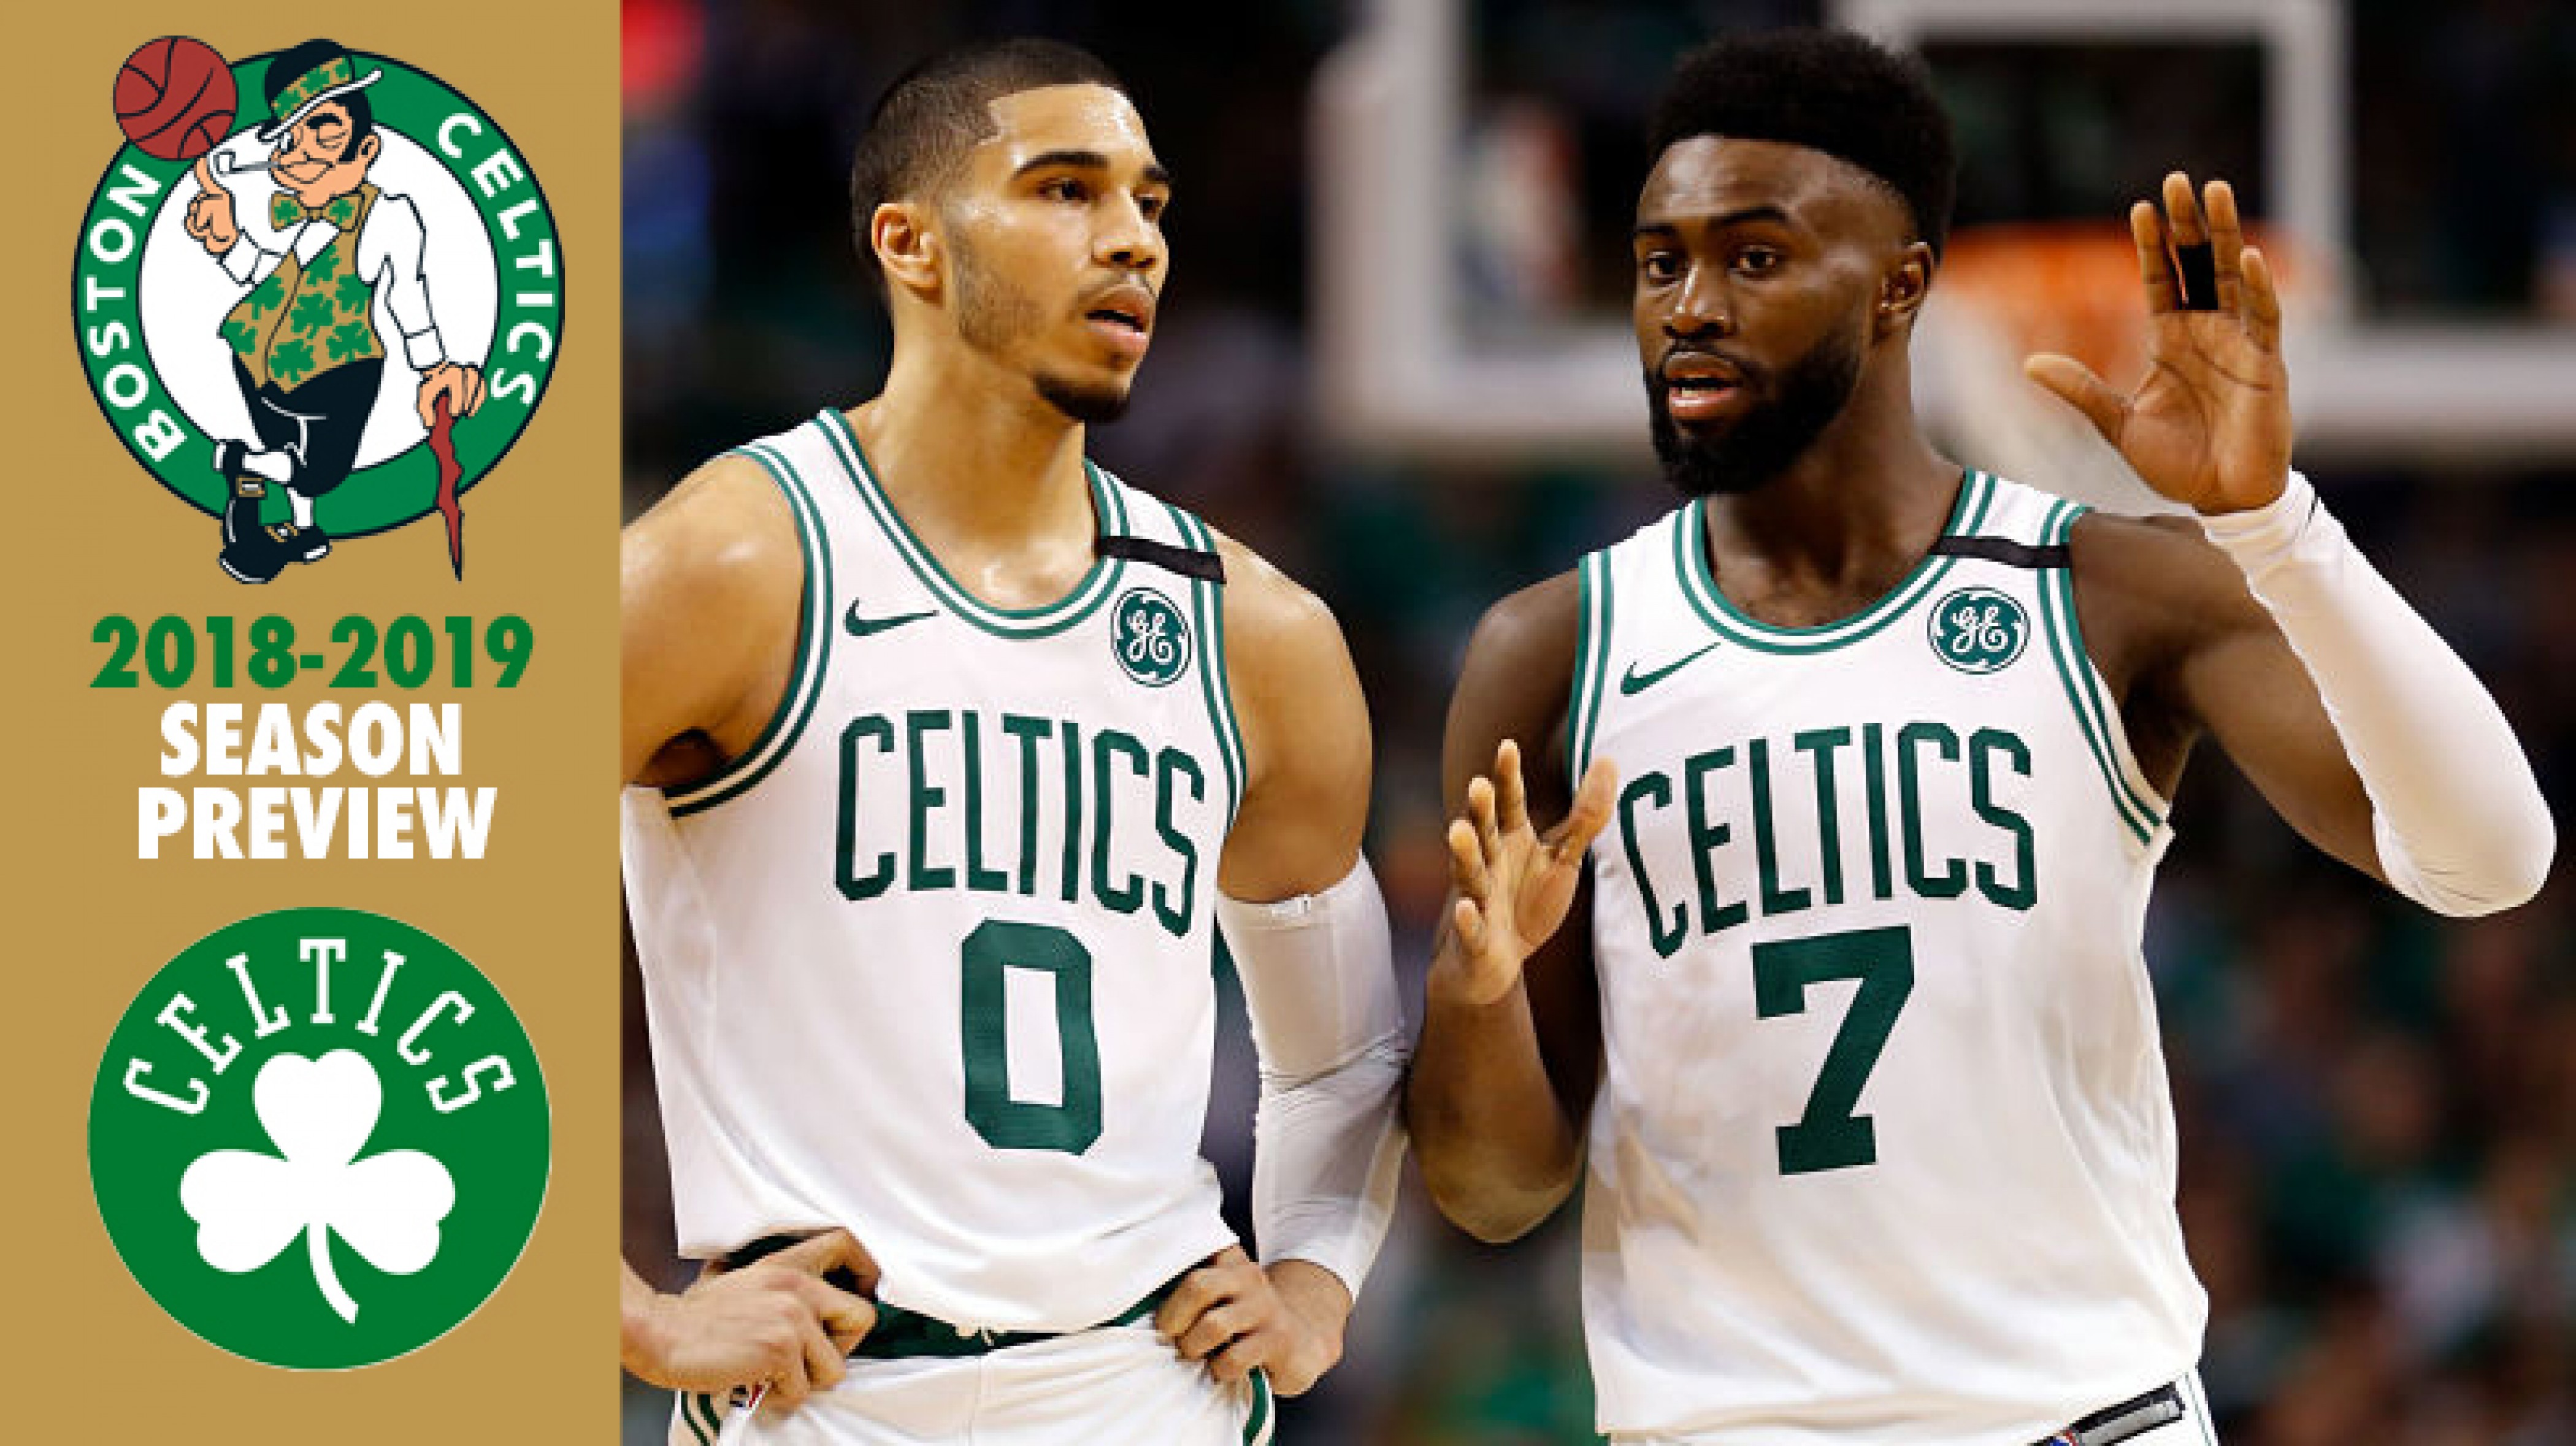 2018-2019 Preview: Boston Celtics - VAVEL.com4200 x 2358